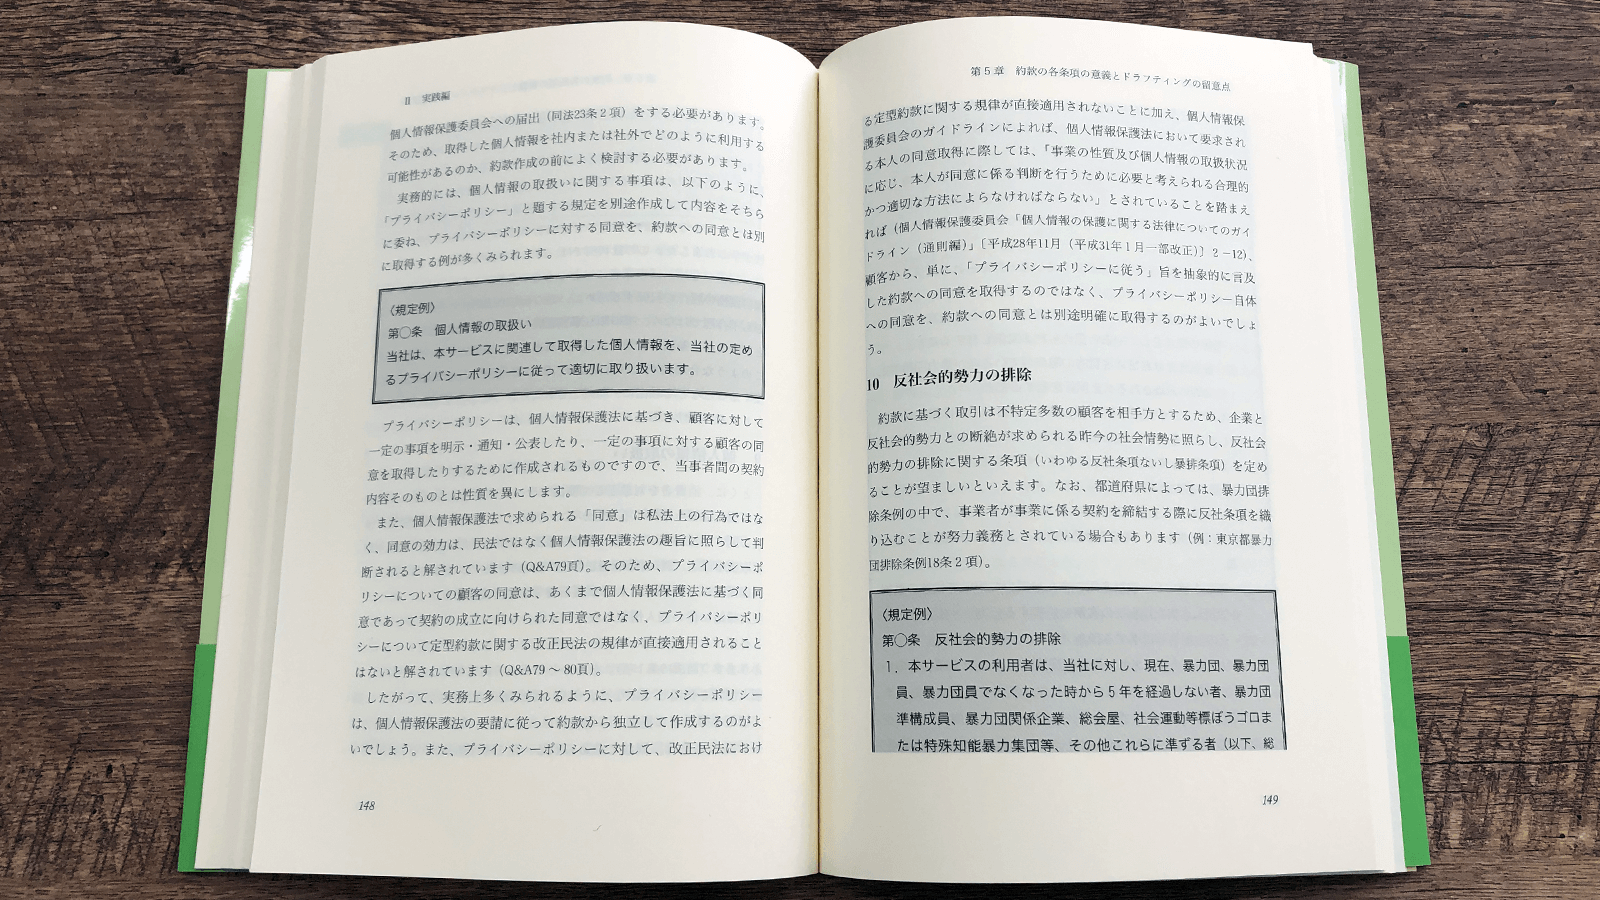 嶋寺基・細川恭子・小林直弥『約款の基本と実践』P148-149